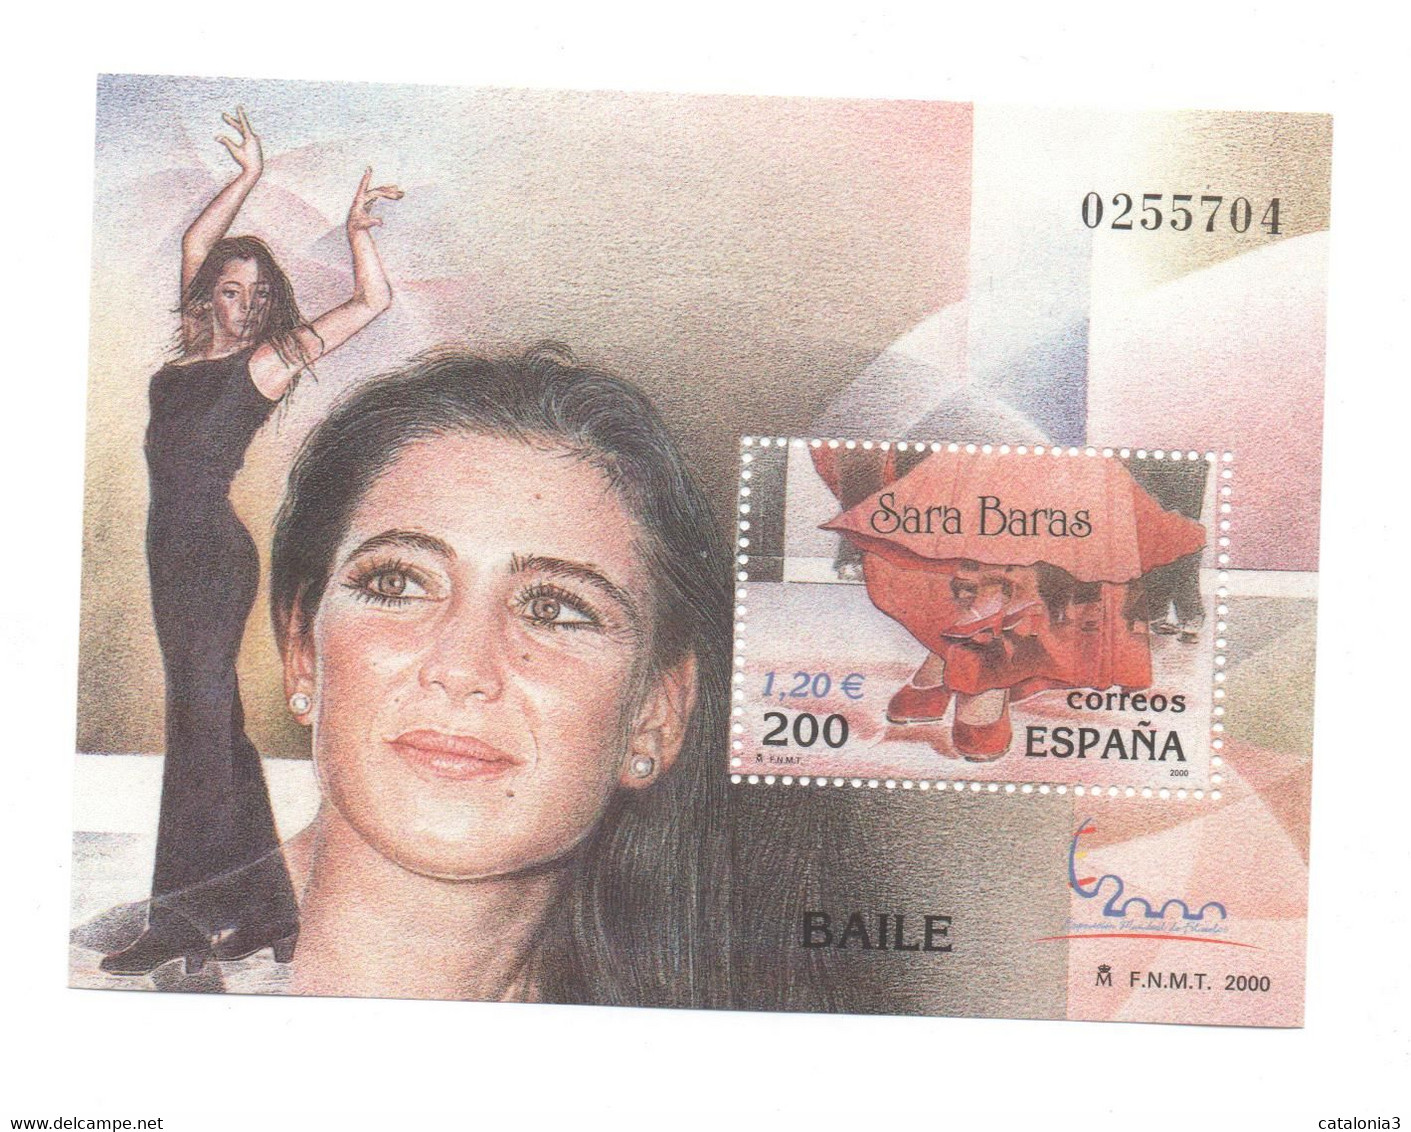 Hojita Sello BAILE Sara Baras (facial 1,20 €) - Commemorative Panes